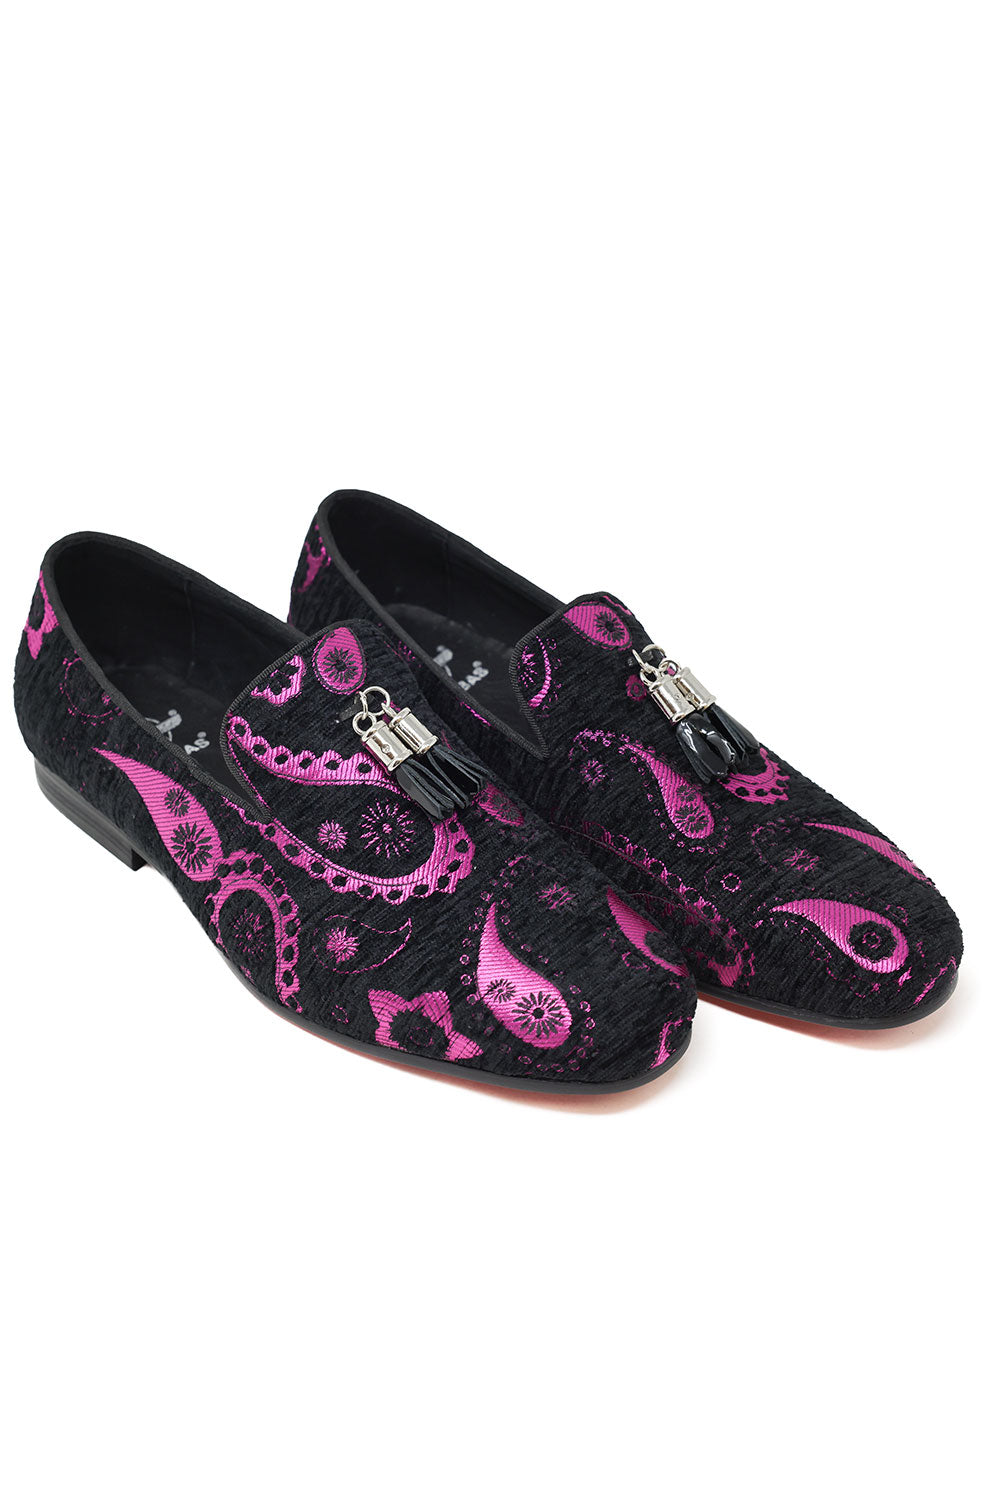 Barabas Men's Rhinestone Tassel black Velvet Slip On Loafer Shoes 2SH3101